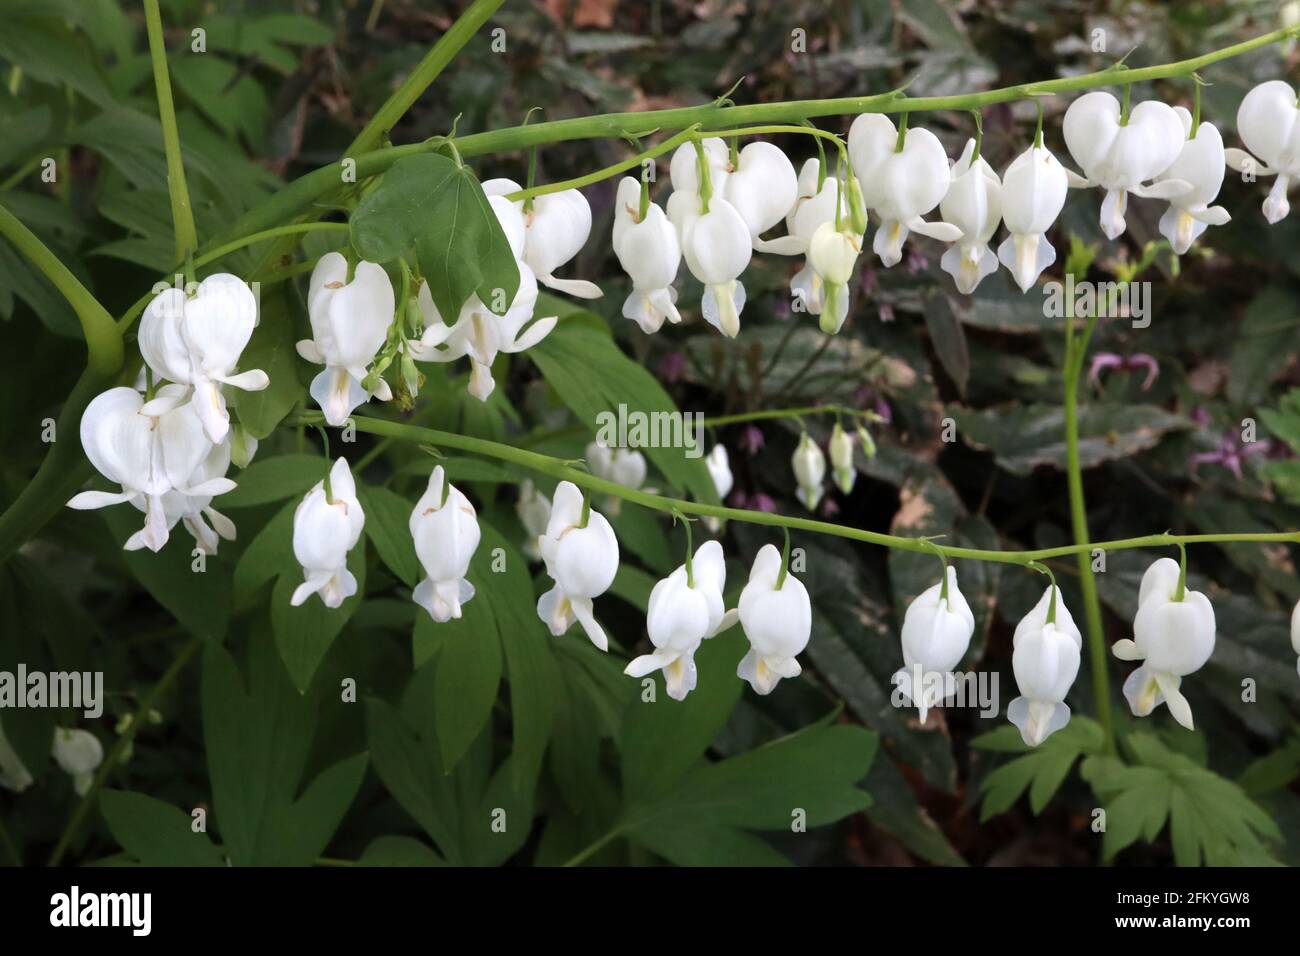 Lamprocapnos spectabilis ‘Alba’ Dicentra spectabilis Alba – weiße herzförmige Blüten mit farnem Laub, Mai, England, Großbritannien Stockfoto